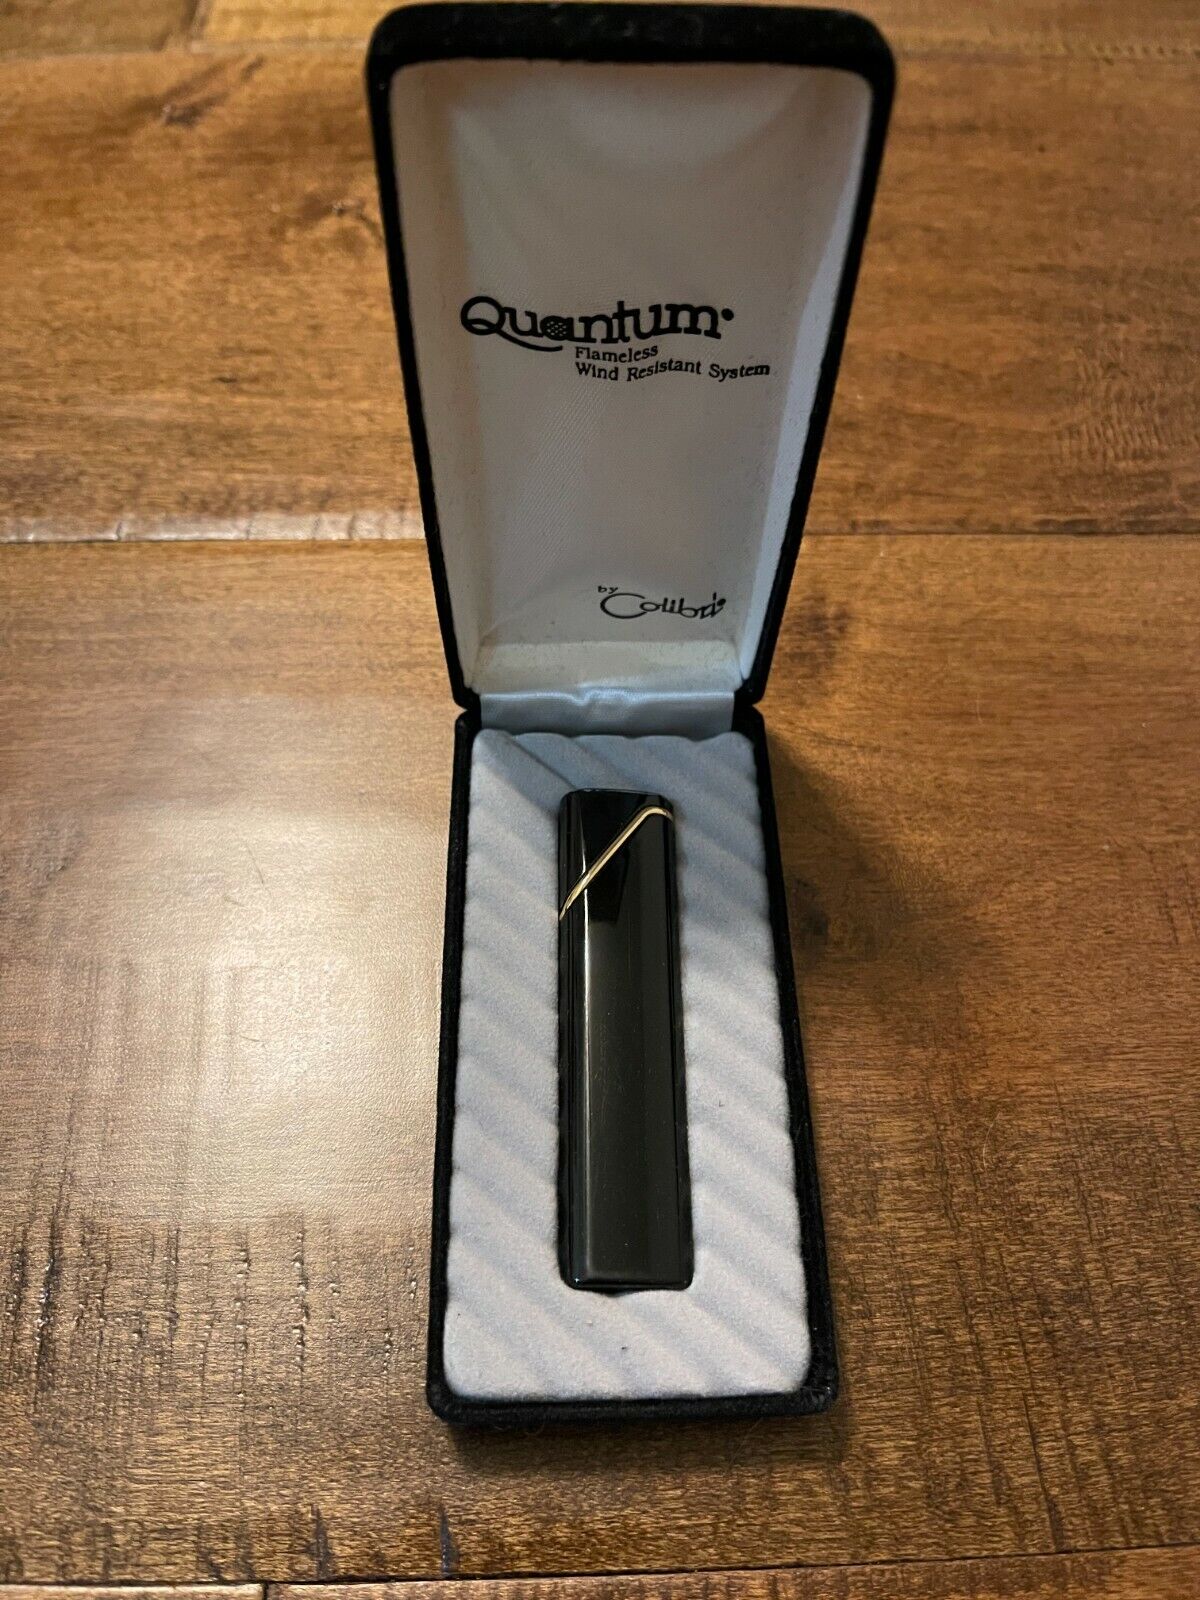 Vtg Colibri Quantum Flameless Wind Resistant System Made in Japan Black Lighter